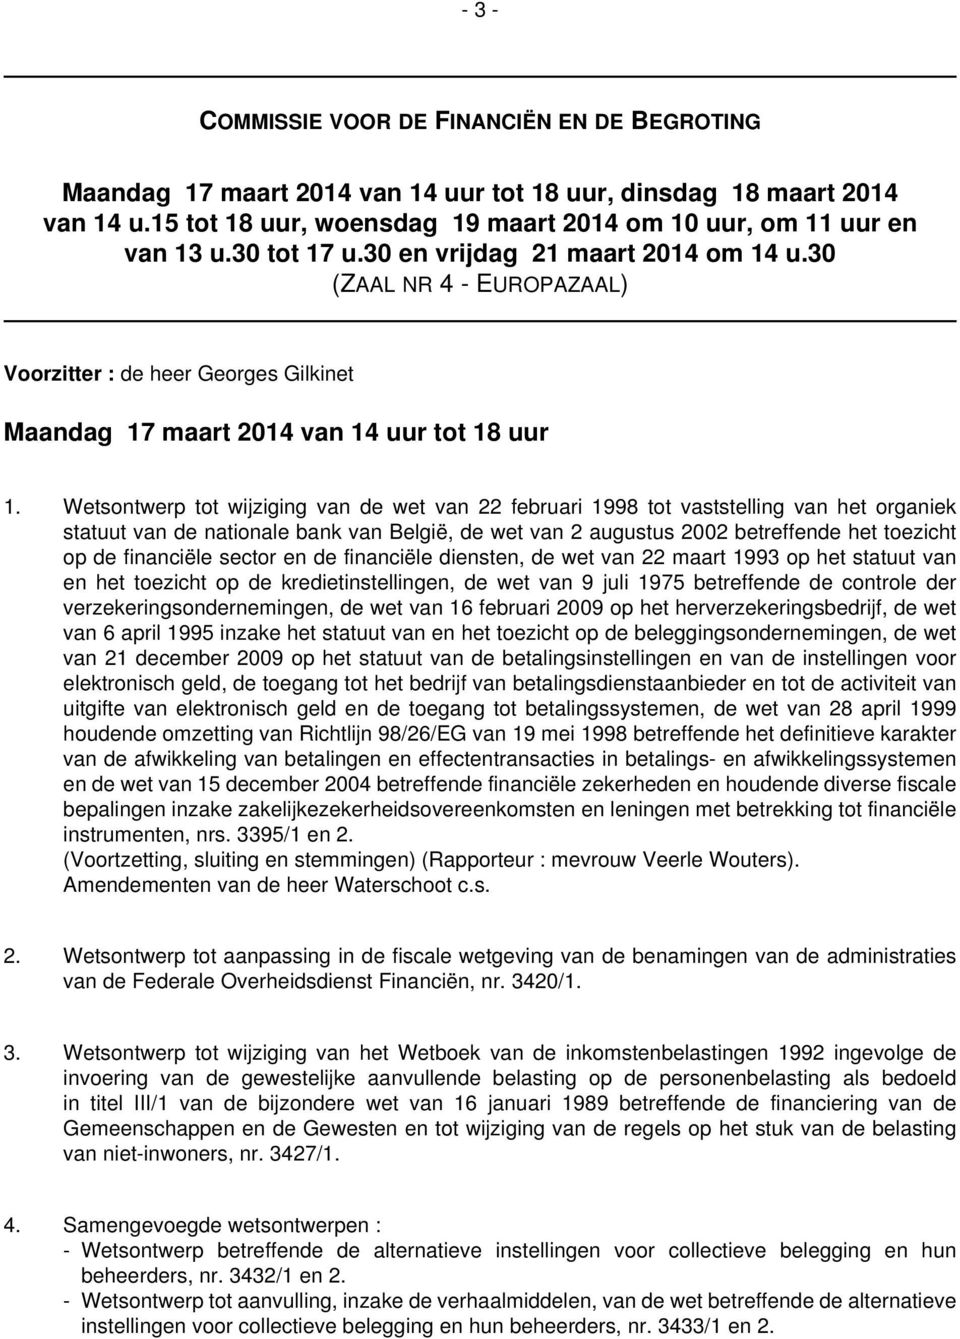 Wetsontwerp tot wijziging van de wet van 22 februari 1998 tot vaststelling van het organiek statuut van de nationale bank van België, de wet van 2 augustus 2002 betreffende het toezicht op de